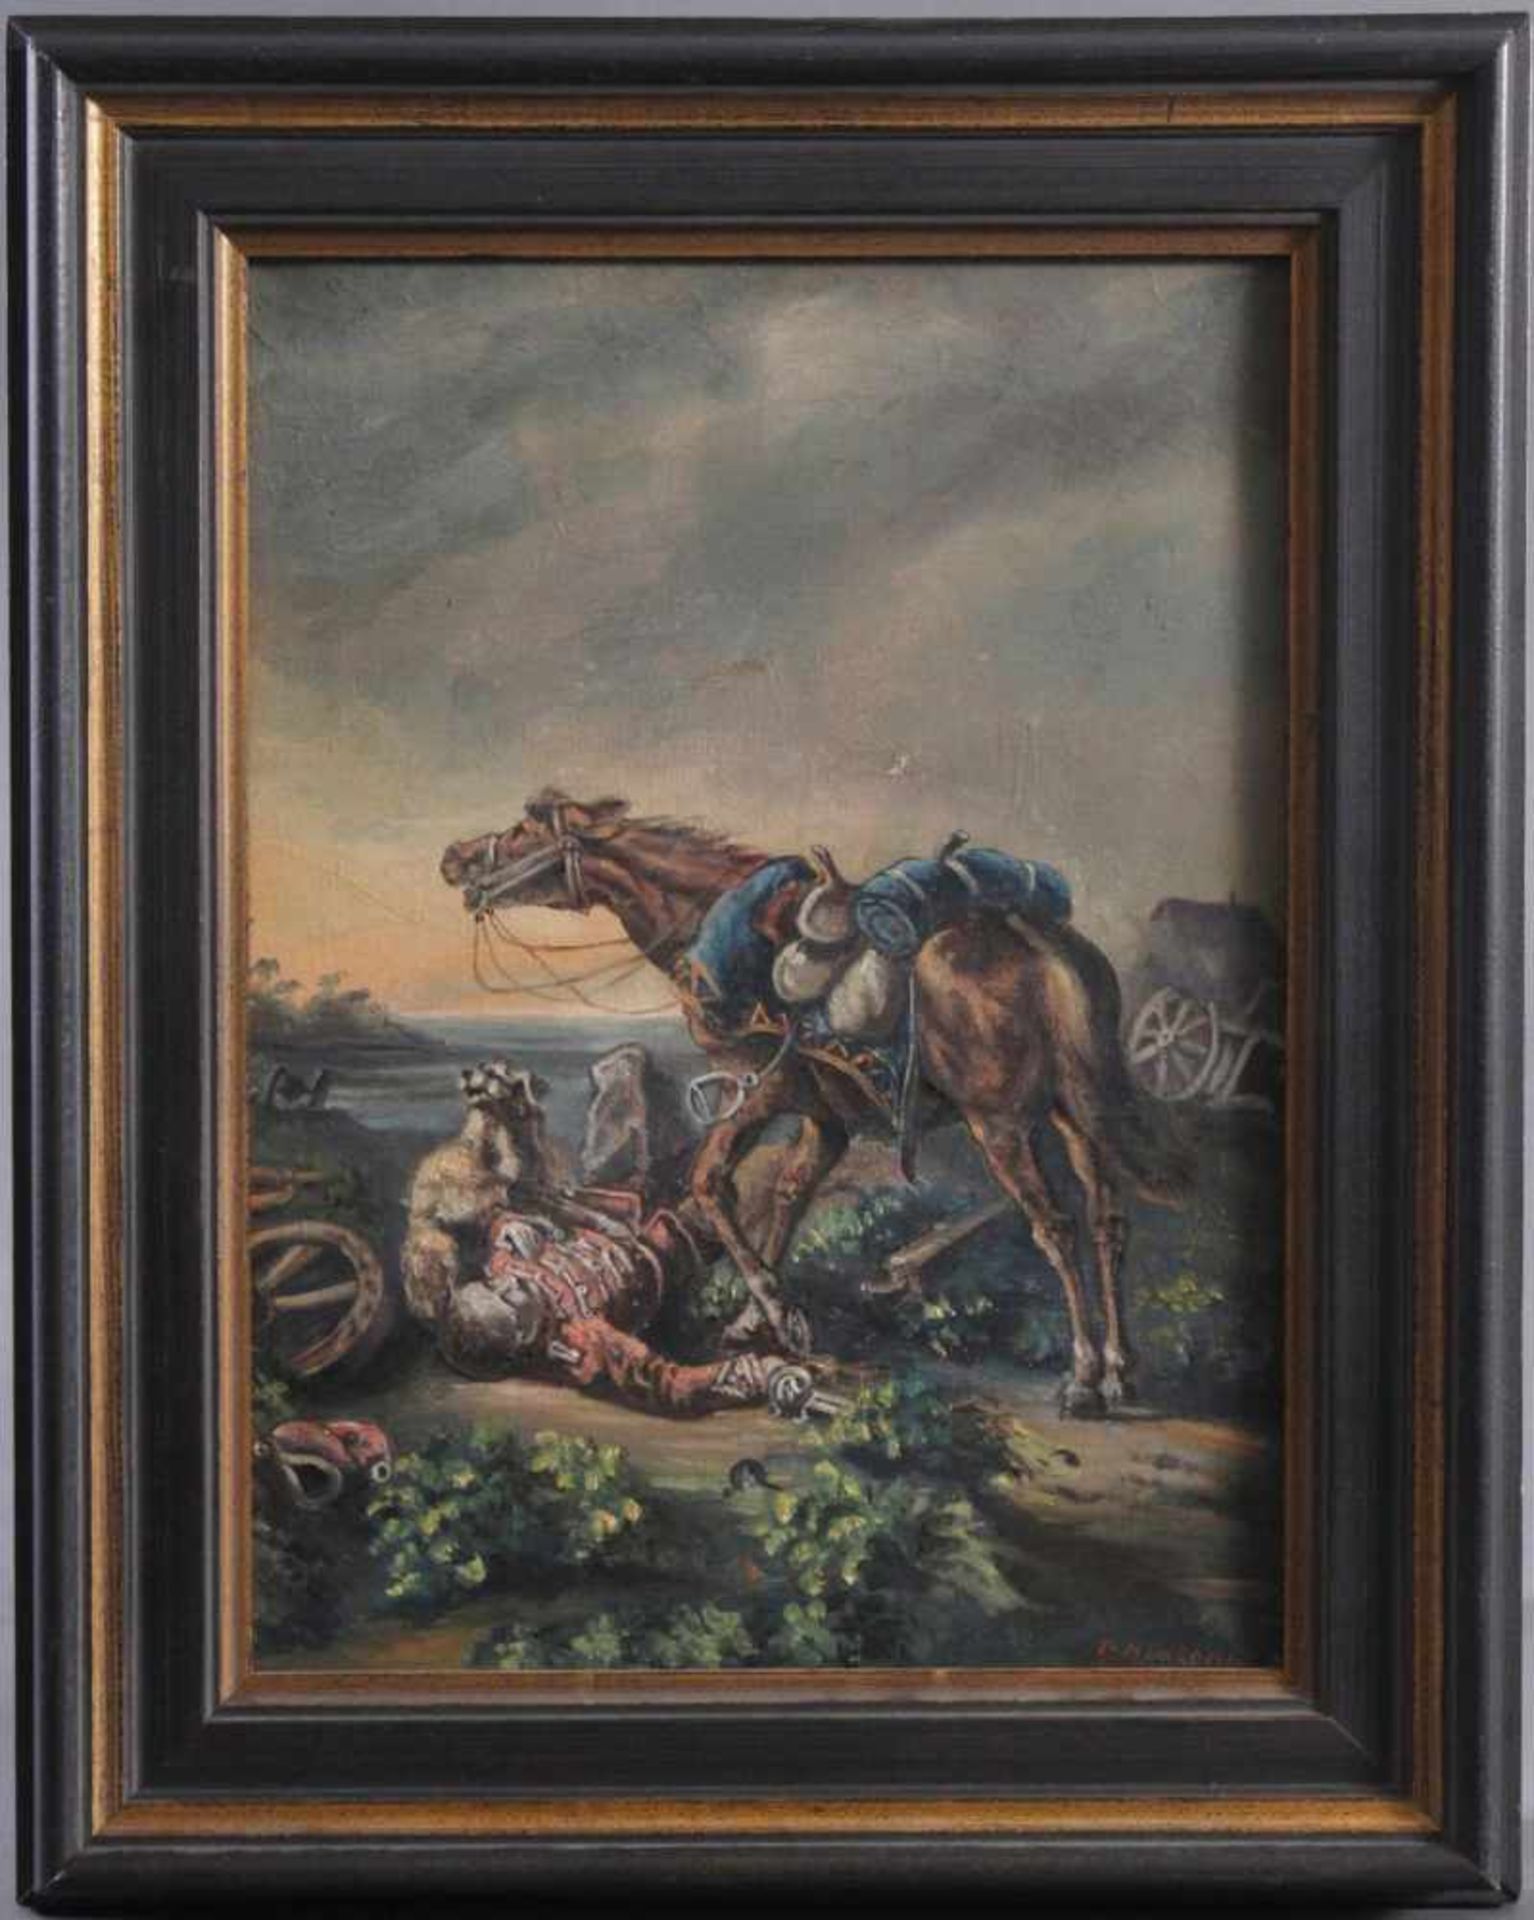 Gefallener Soldat. Gemälde 19. JahrhundertÖl auf Leinwand. "Am Boden liegender Soldat mit dem